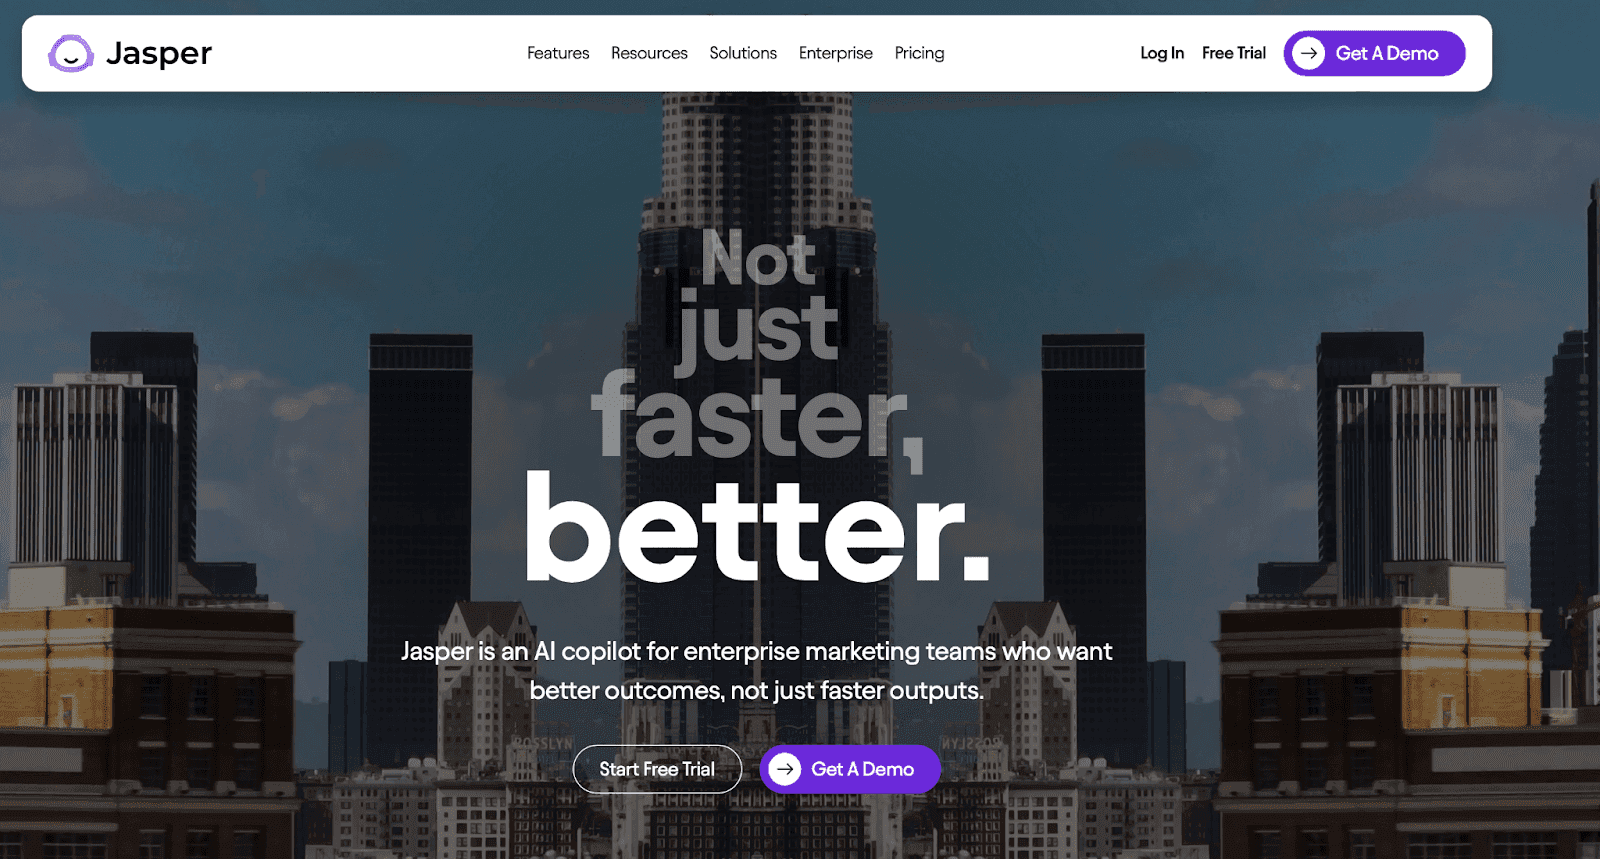 Jasper AI website - Not just faster, better.